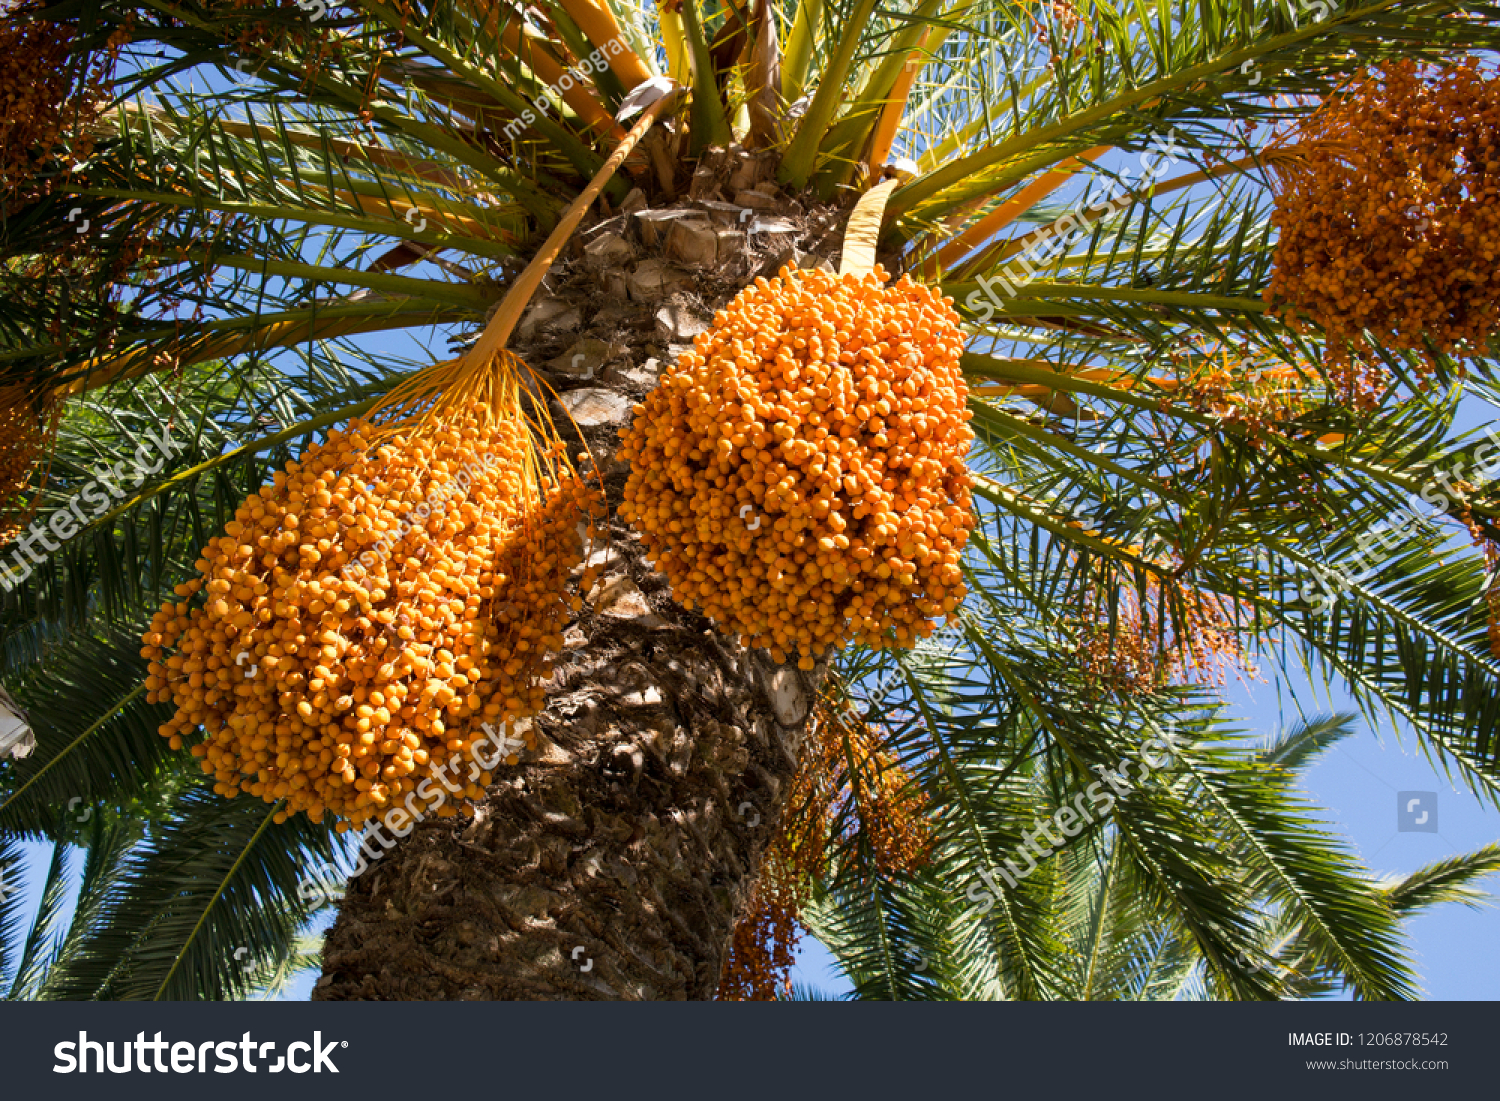 Финики чьи. Phoenix dactylifera. Плоды пальмового дерева. Кактусовый финик. Финик пальчатый (лат. Phoenix dactylifera).